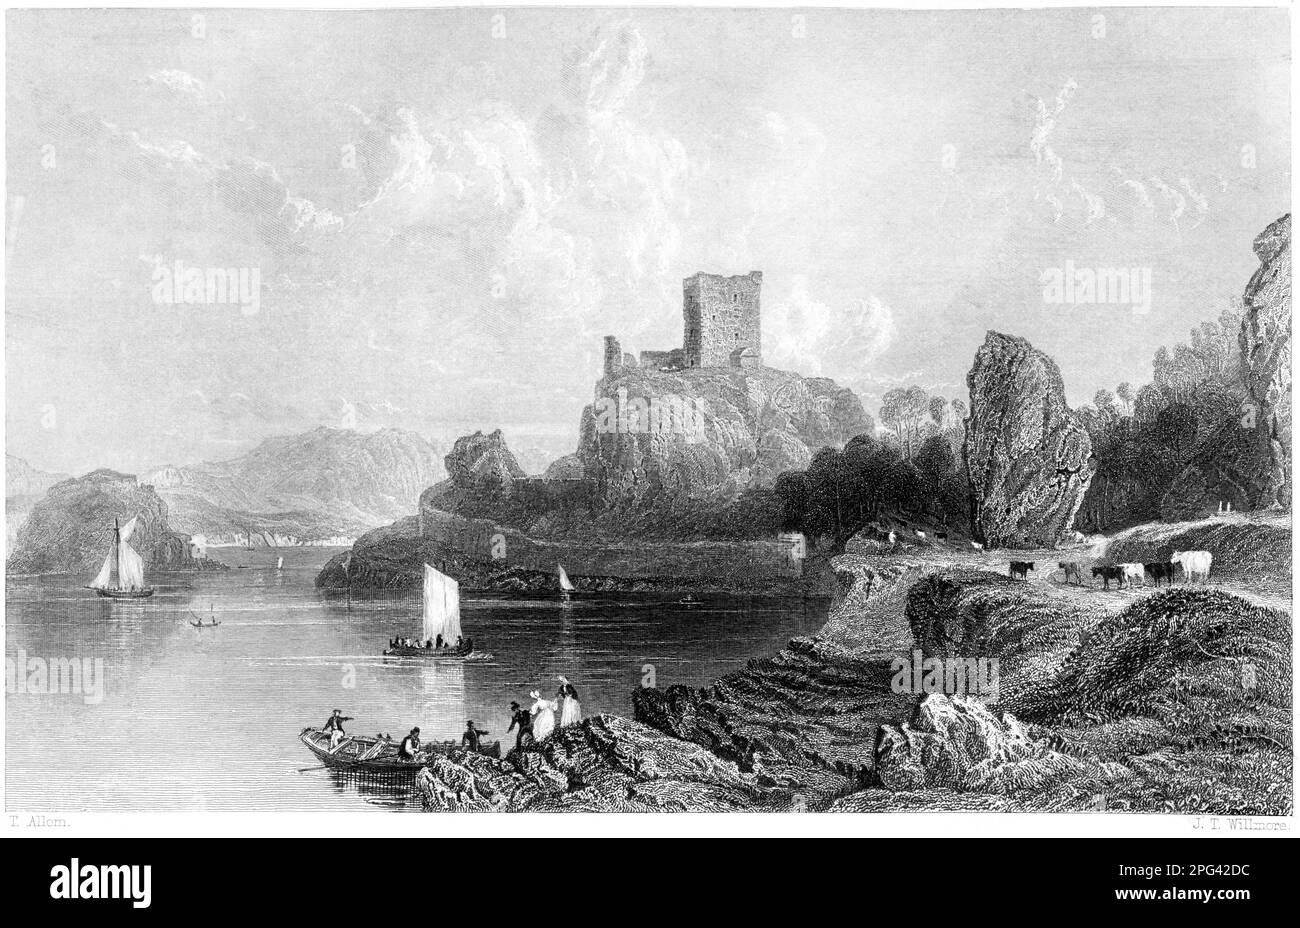 Eine Gravur von Dunolly (Dunollie) Castle in der Nähe von Oban, Argyleshire, Schottland, Großbritannien, gescannt mit hoher Auflösung aus einem Buch, das 1840 gedruckt wurde. Stockfoto